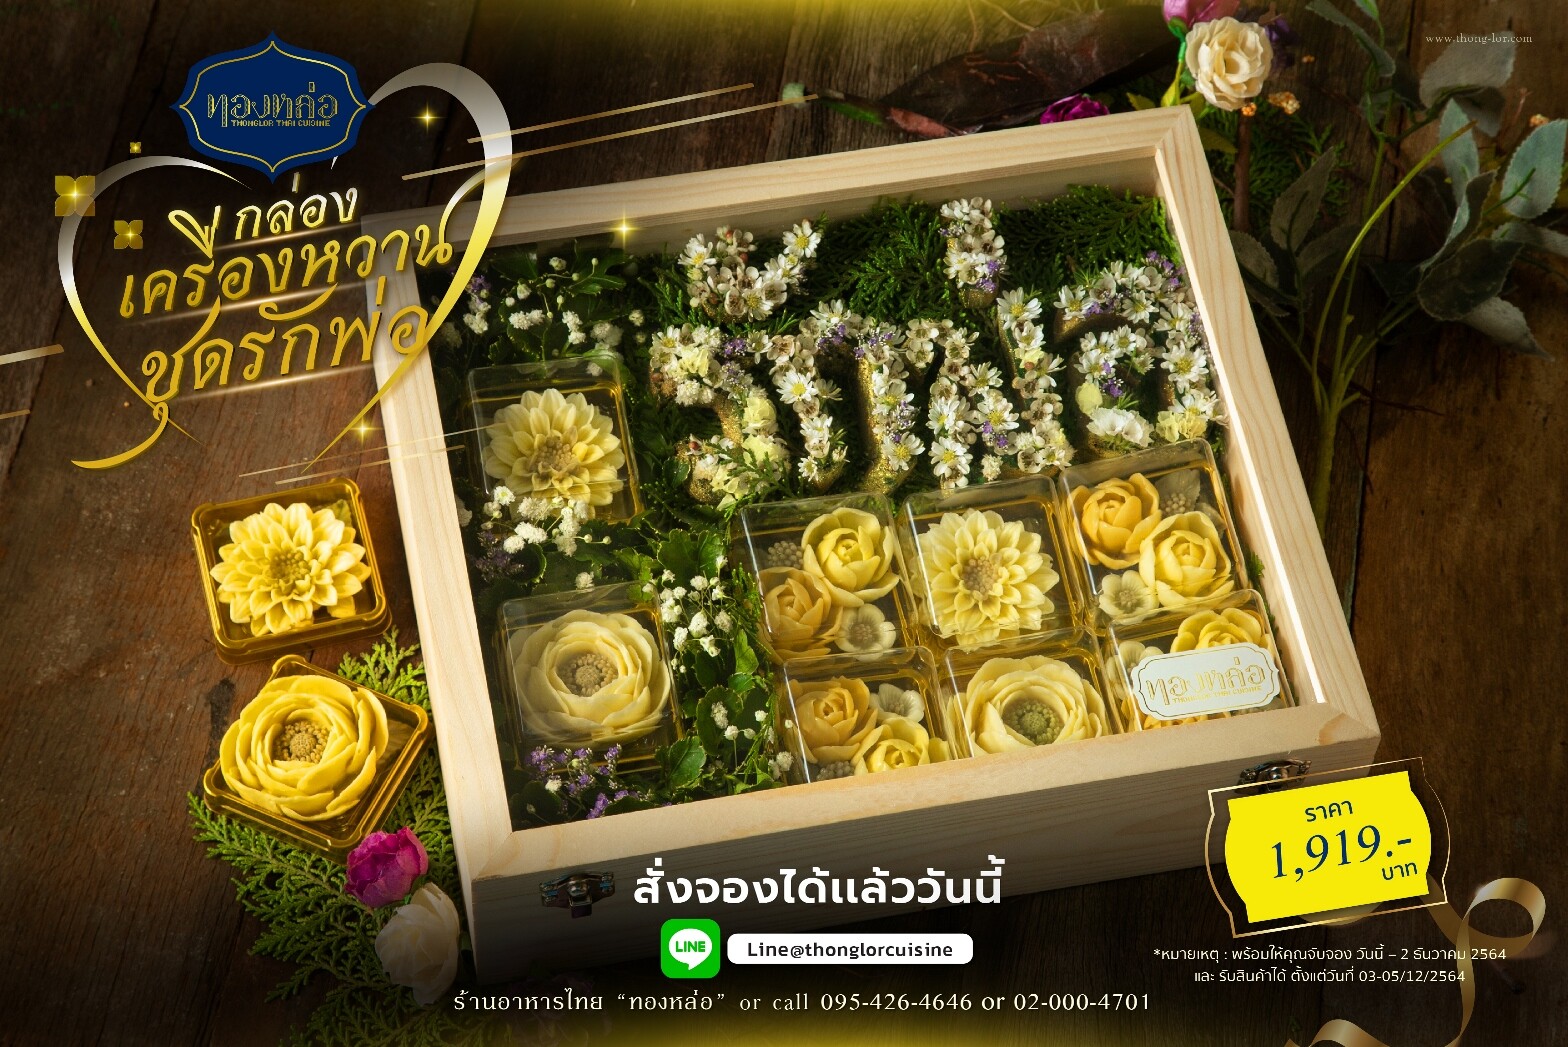 ร้านอาหารไทย "ทองหล่อ" ชวนคุณบอกรักพ่อด้วย "กล่องเครื่องหวานชุดรักพ่อ"  พร้อมให้จับจองตั้งแต่วันนี้ - 2 ธันวาคม 2564